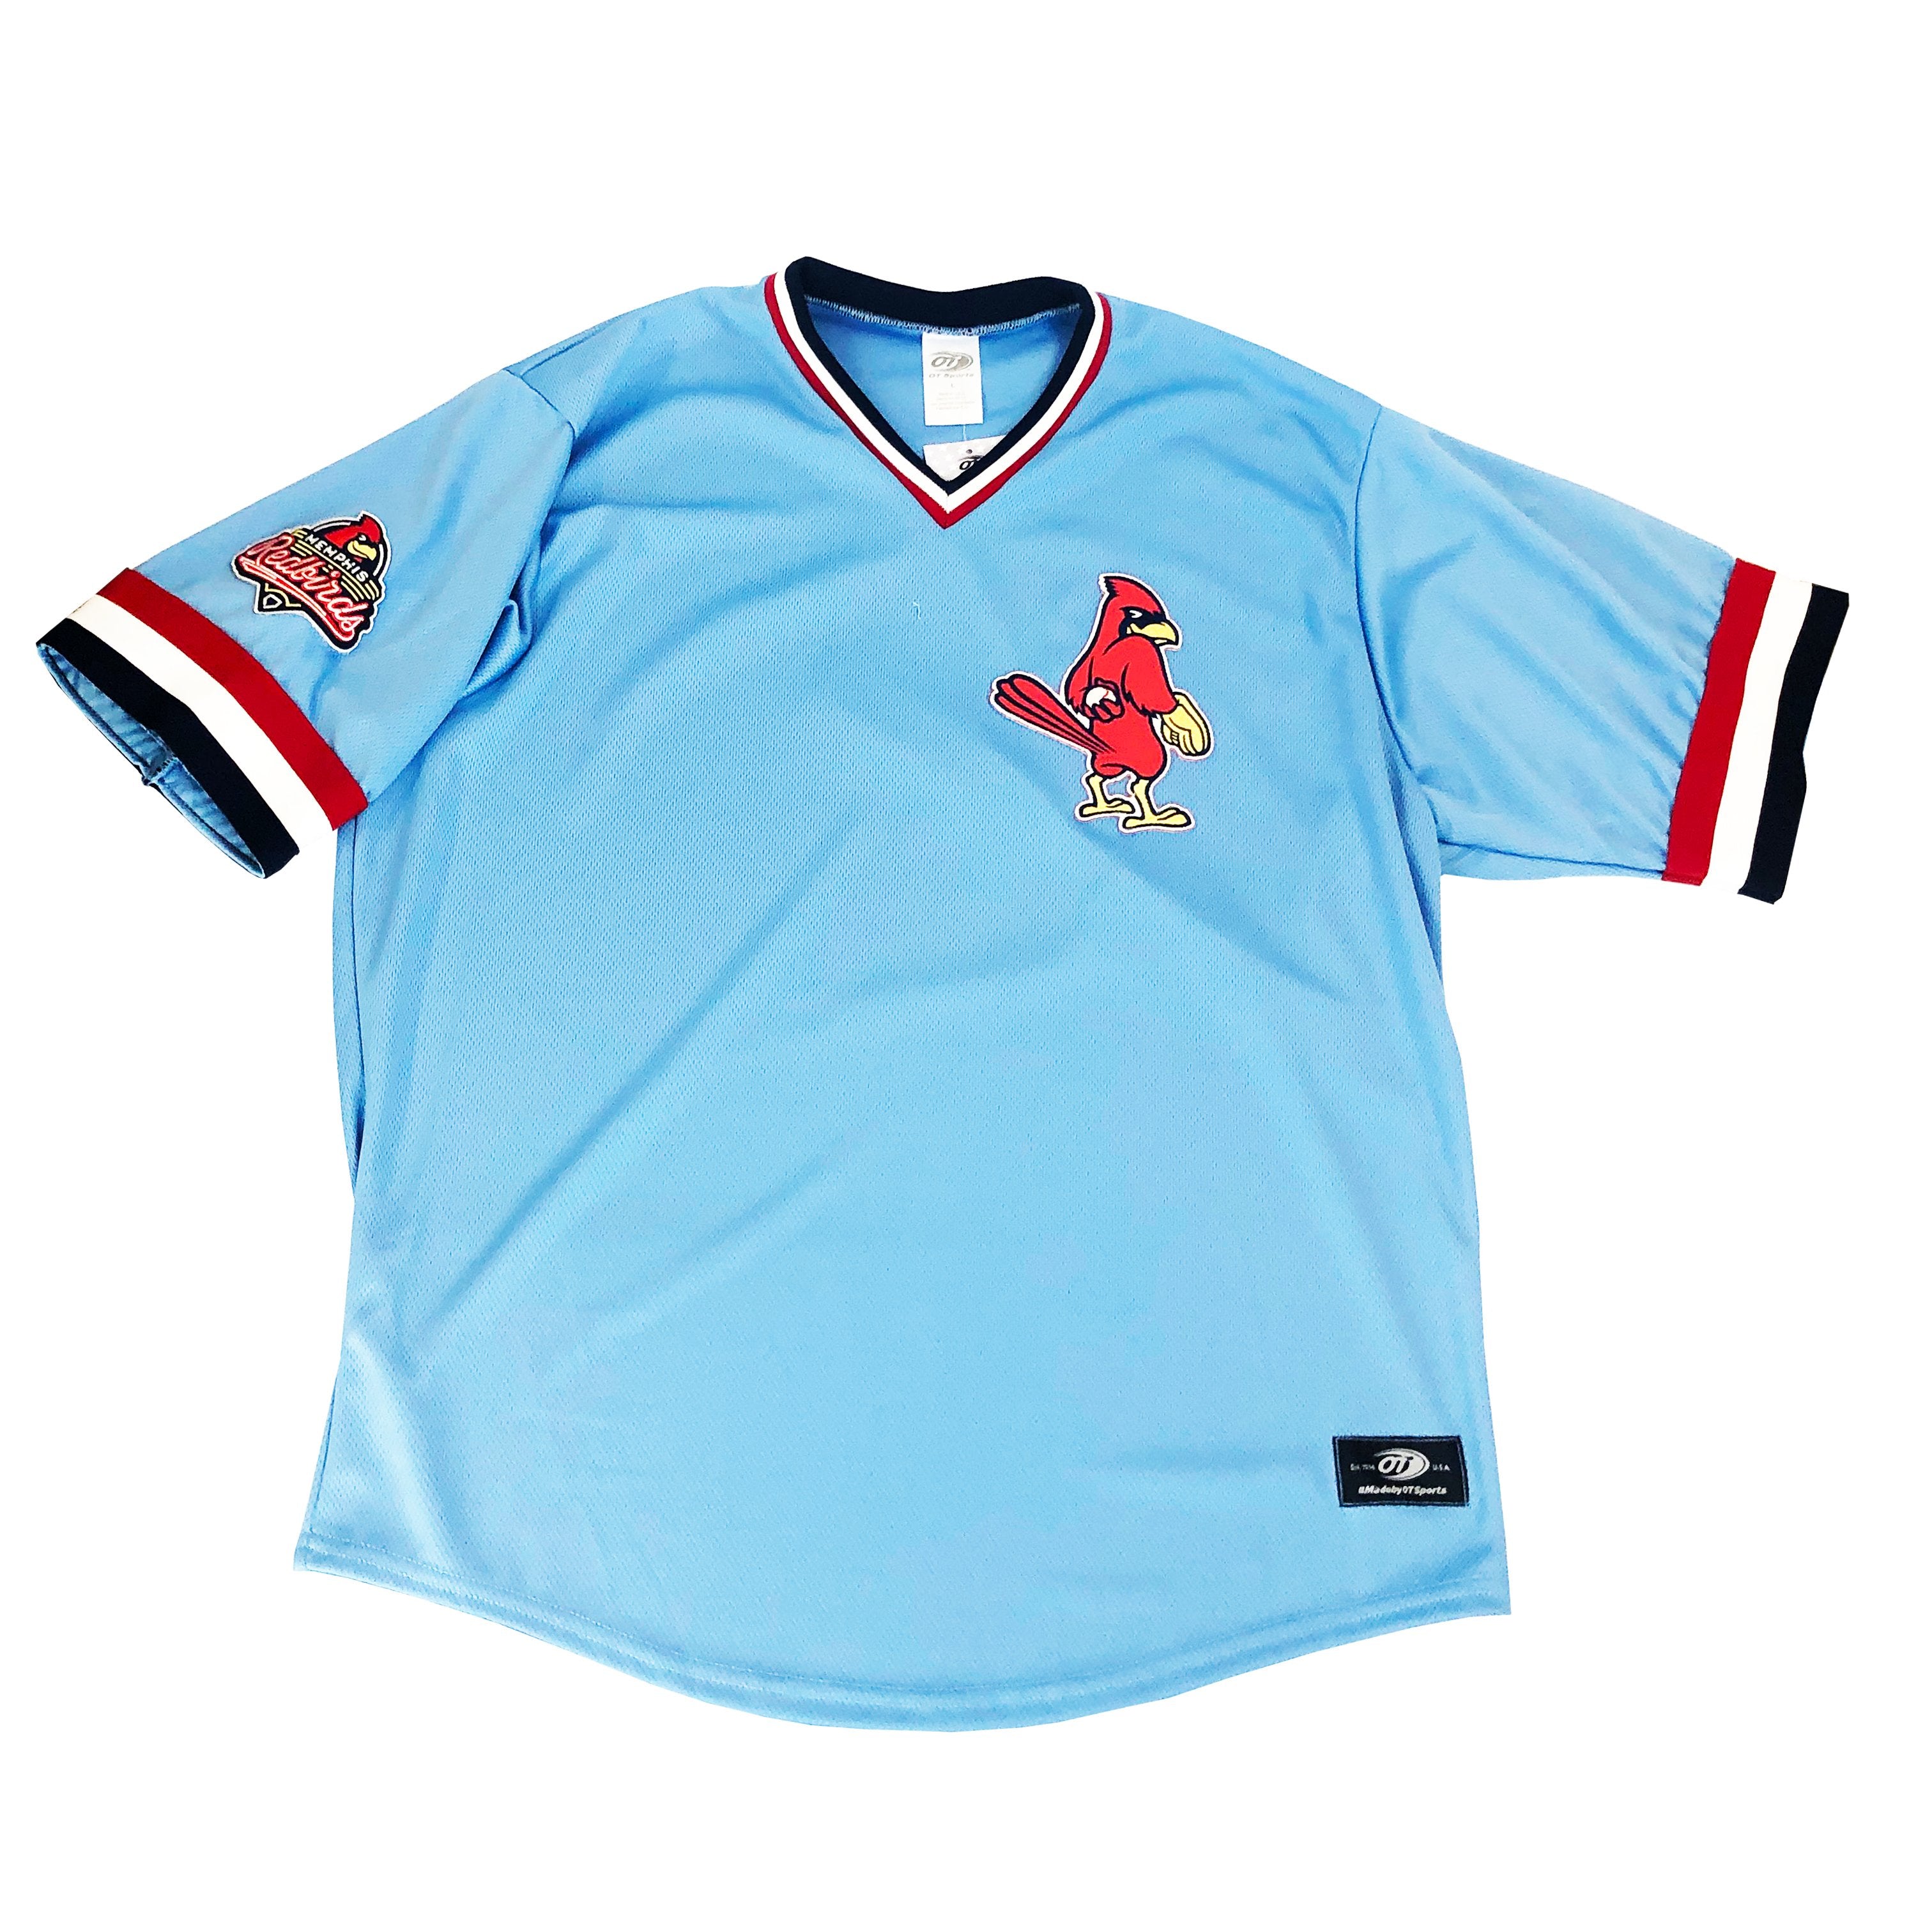 cardinals powder blue shirt